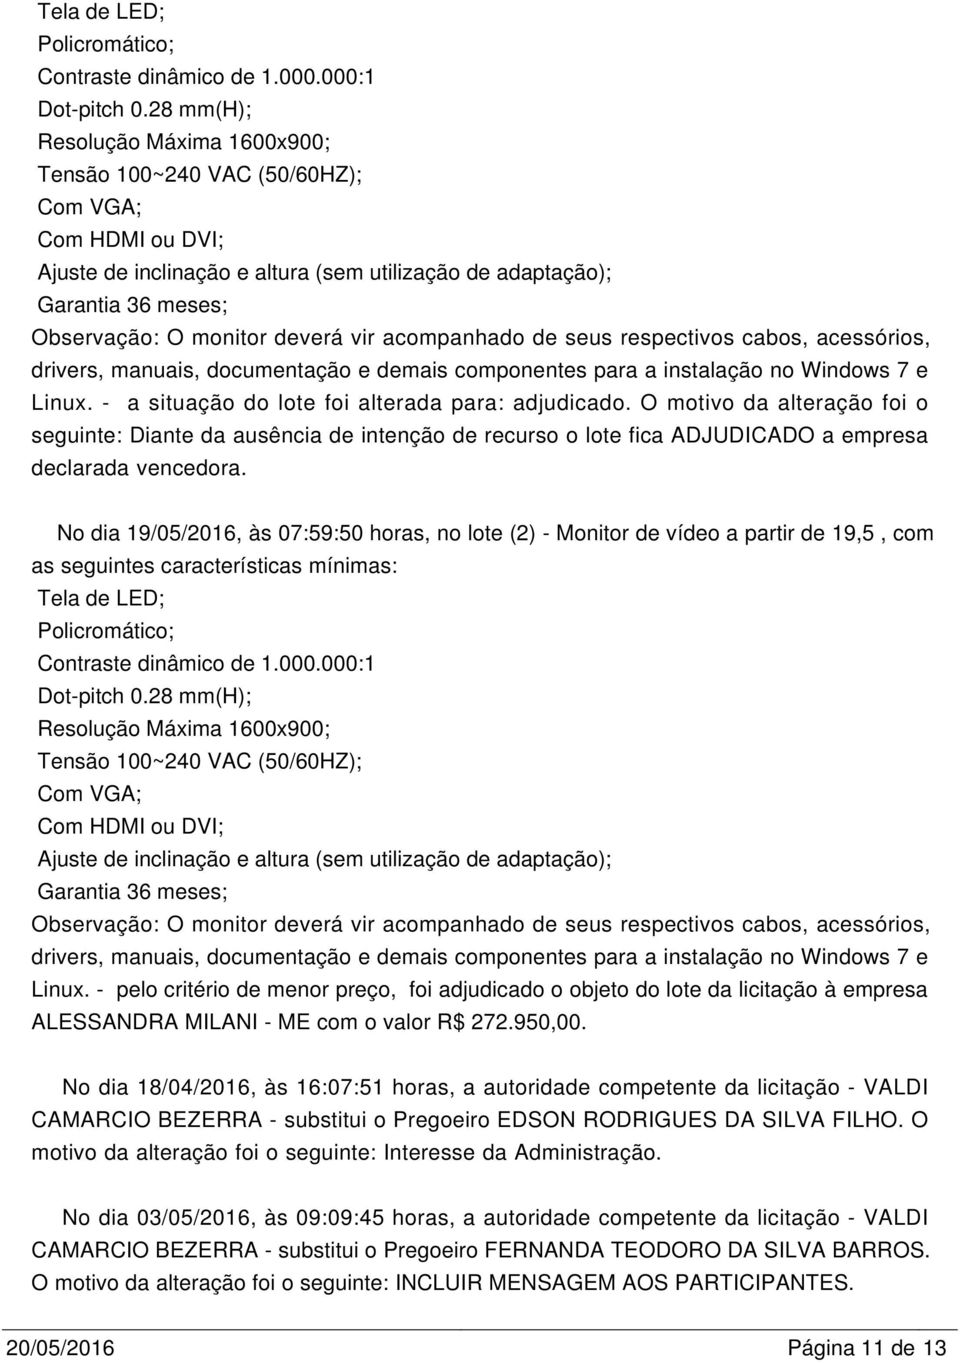 ME com o valor R$ 272.950,00. No dia 18/04/2016, às 16:07:51 horas, a autoridade competente da licitação - VALDI CAMARCIO BEZERRA - substitui o Pregoeiro EDSON RODRIGUES DA SILVA FILHO.